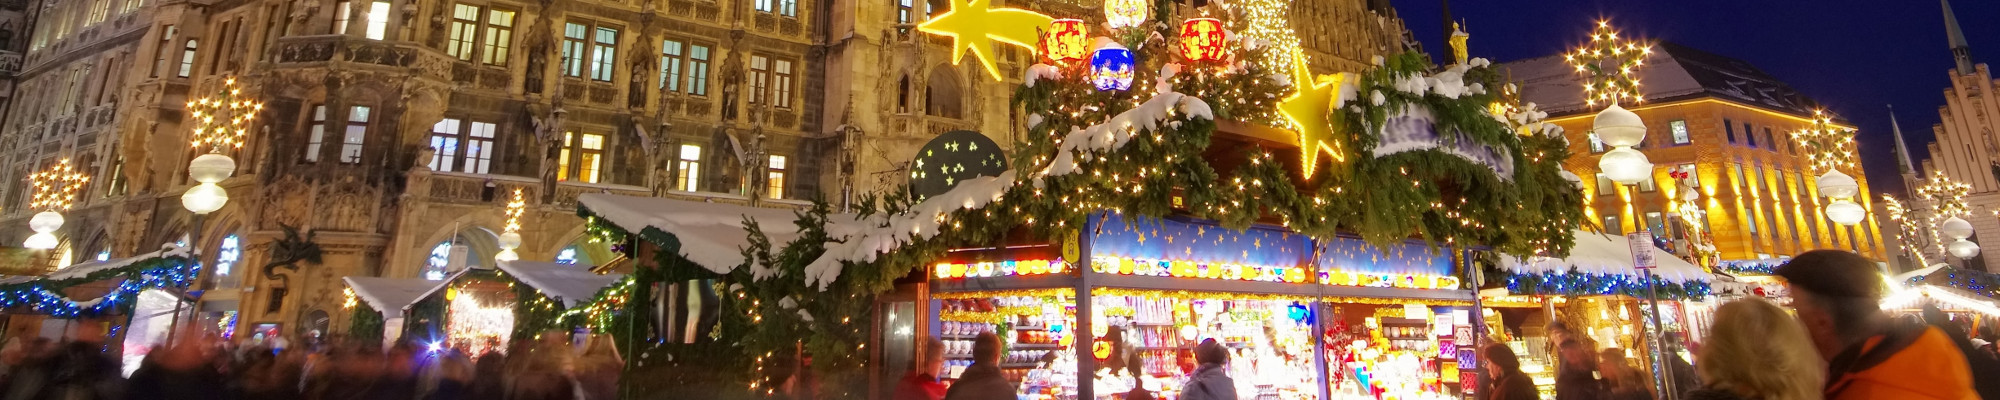 Weihnachtsfeier München